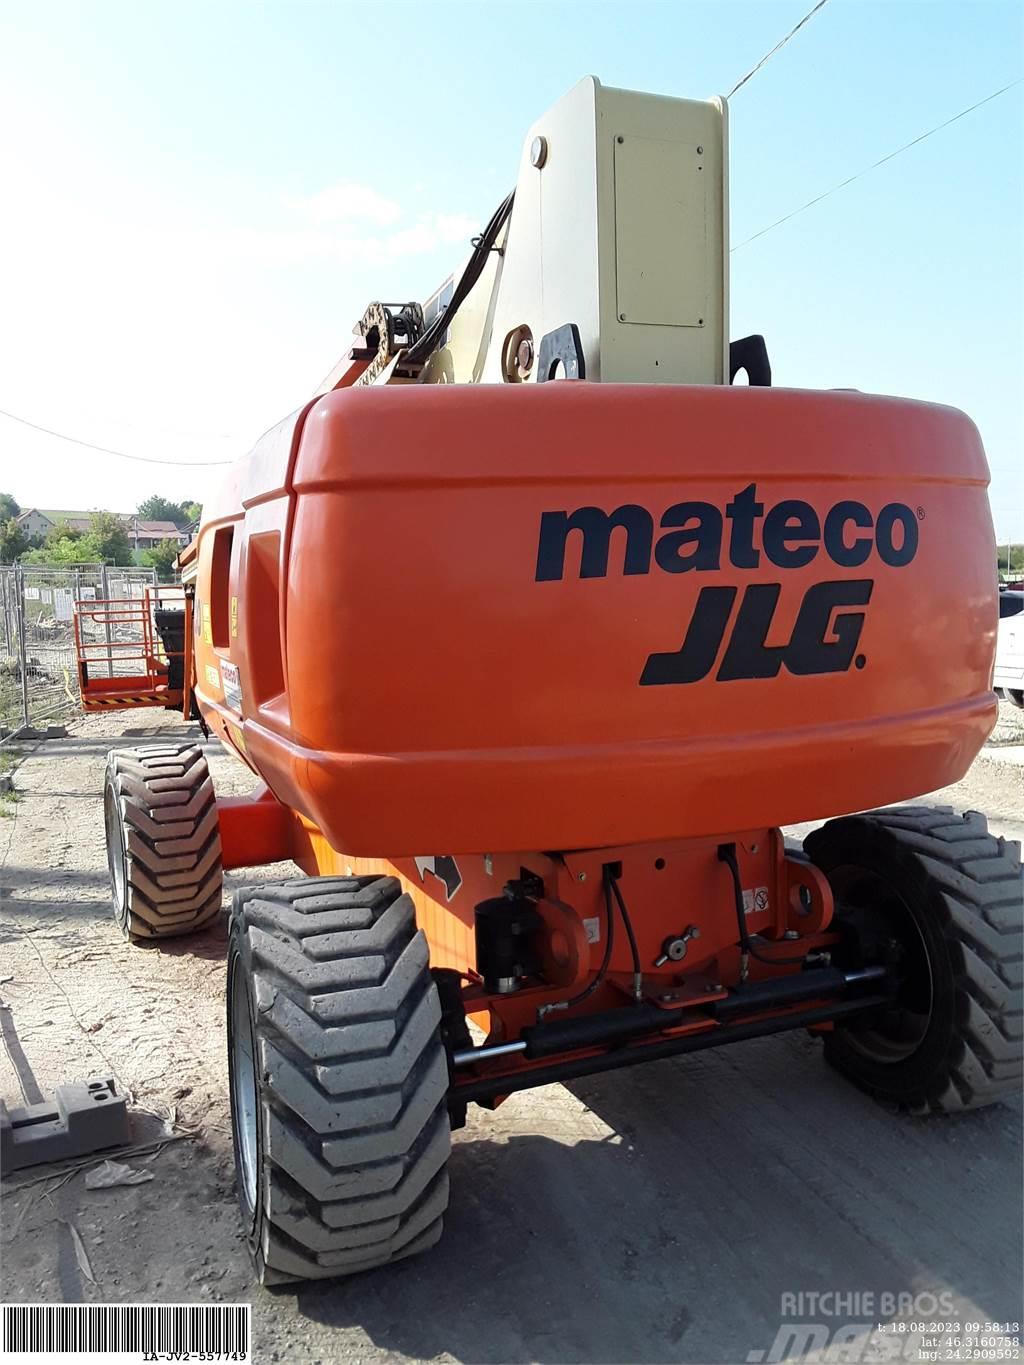 JLG 860SJ Articulated boom lifts